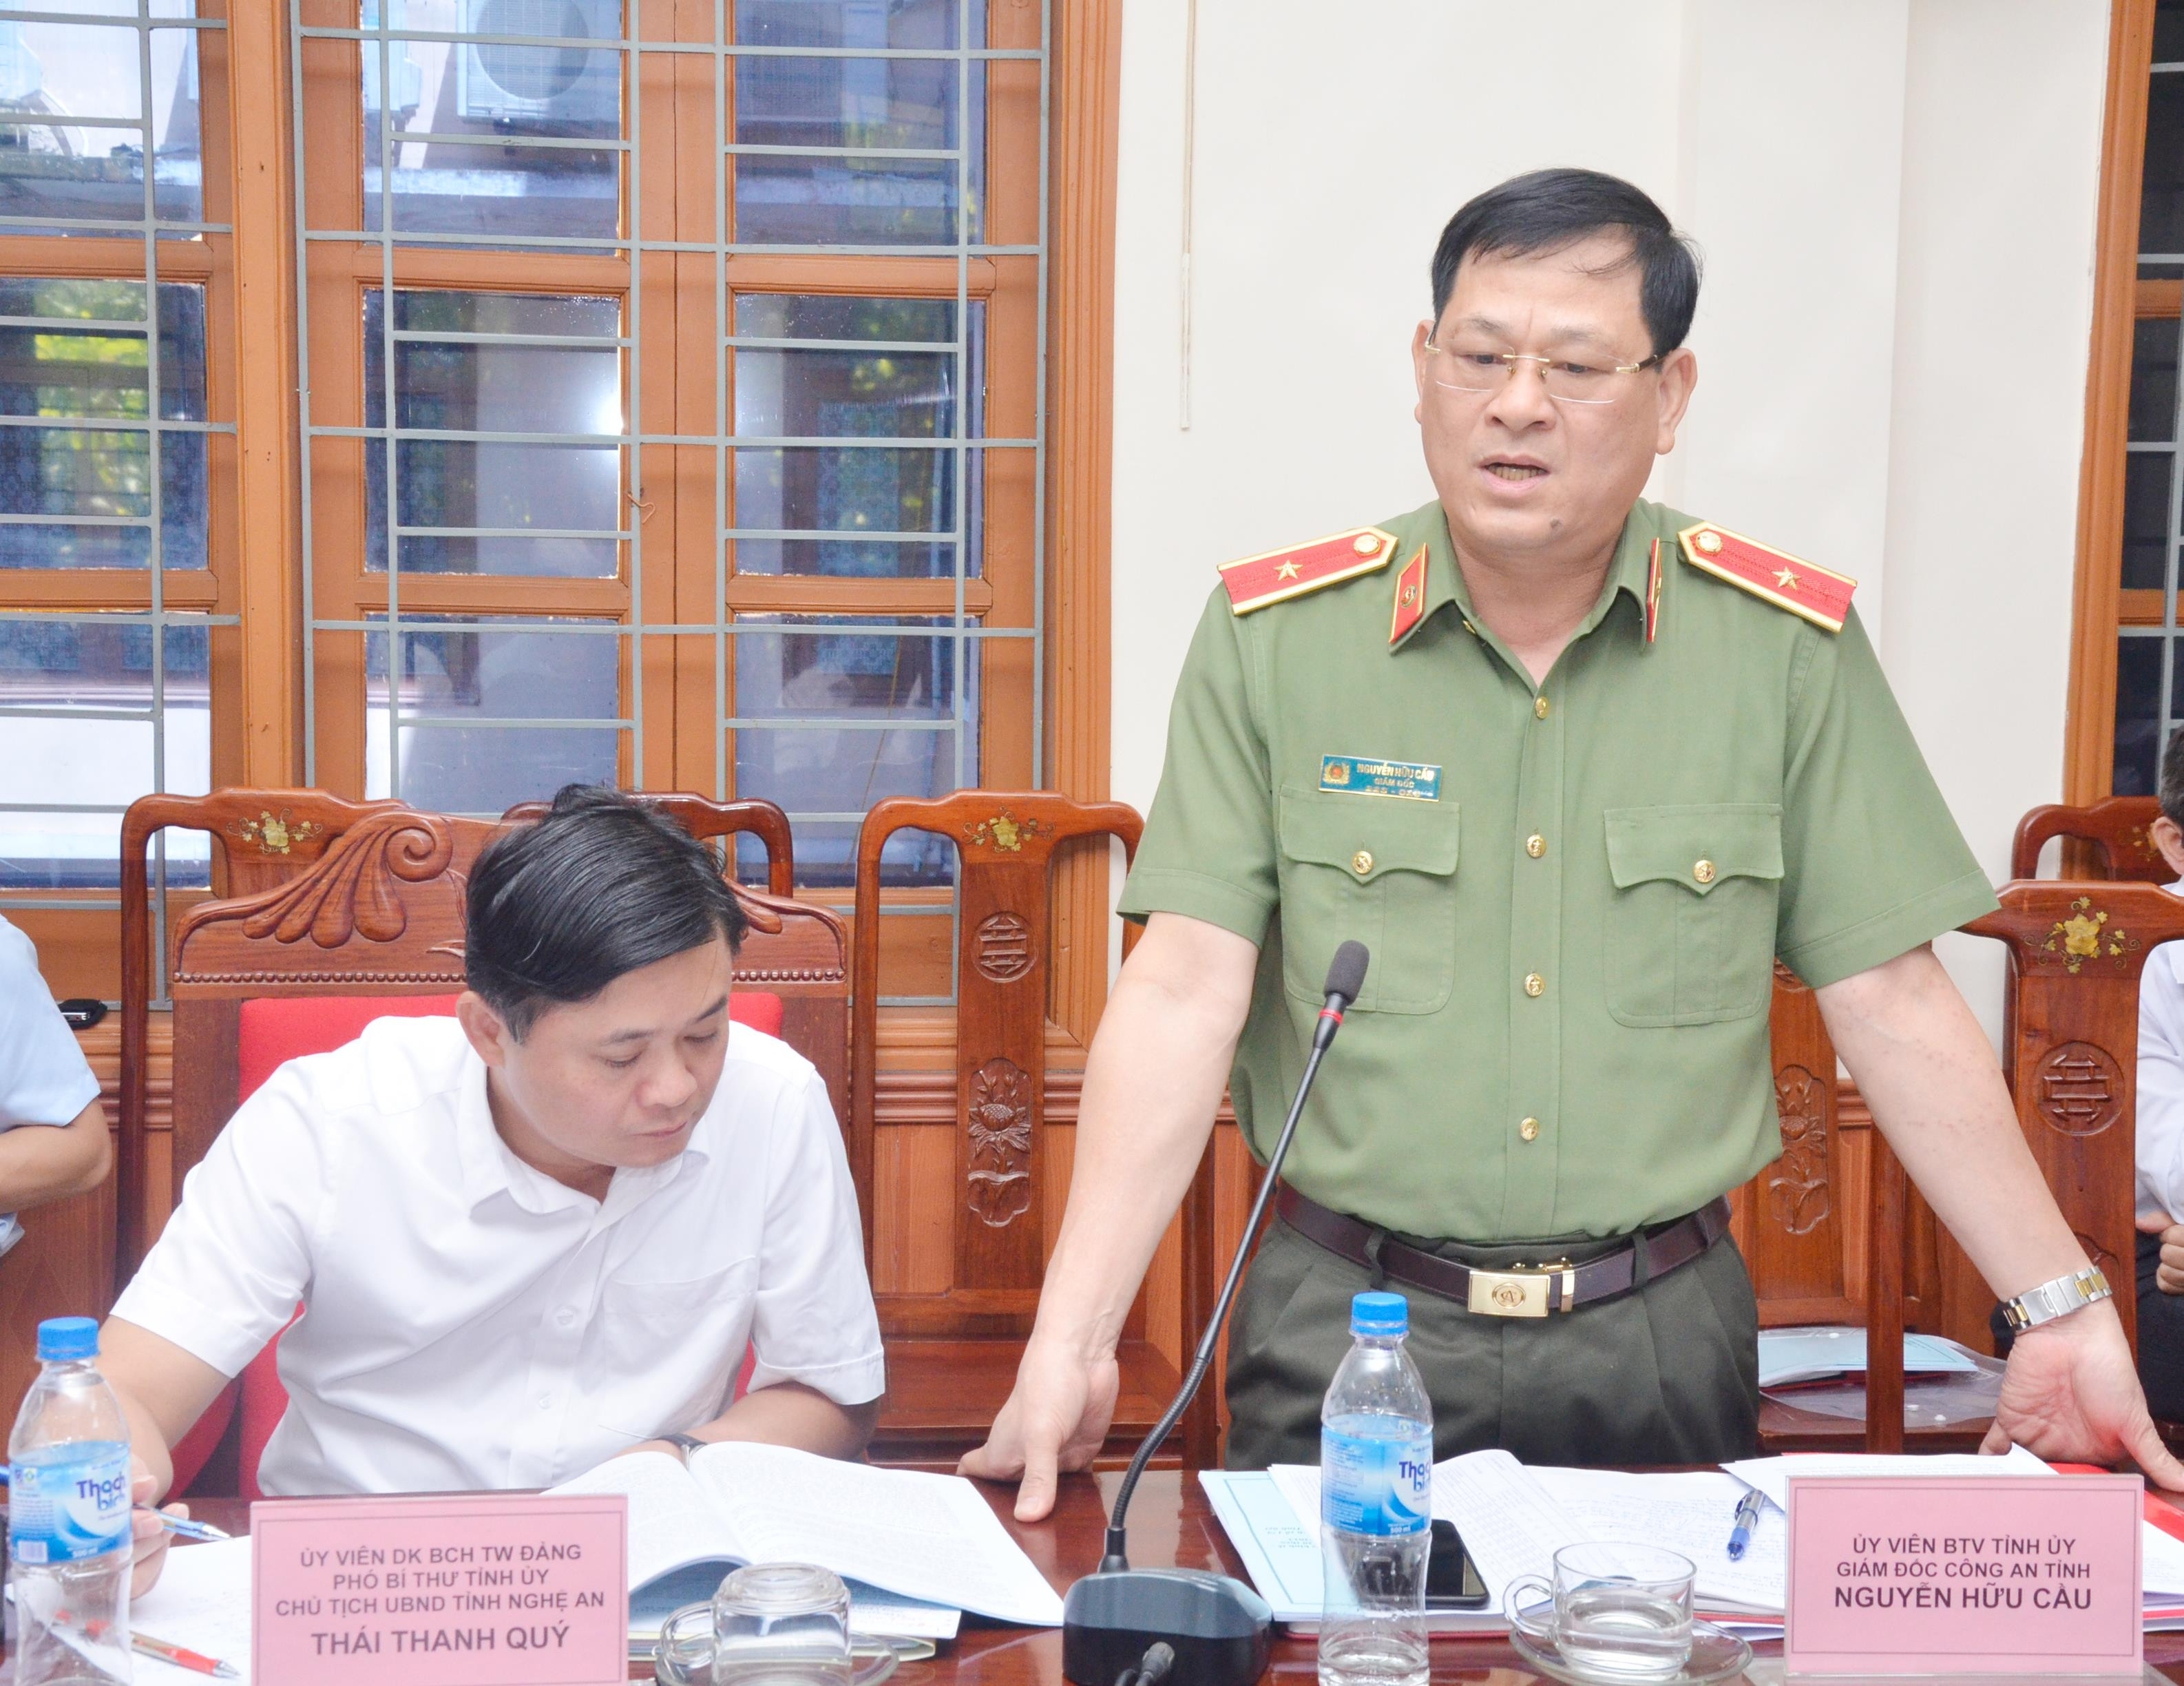 Thiếu tướng Nguyễn Hữu Cầu phát biểu tại cuộc làm việc. Ảnh: Thanh Lê